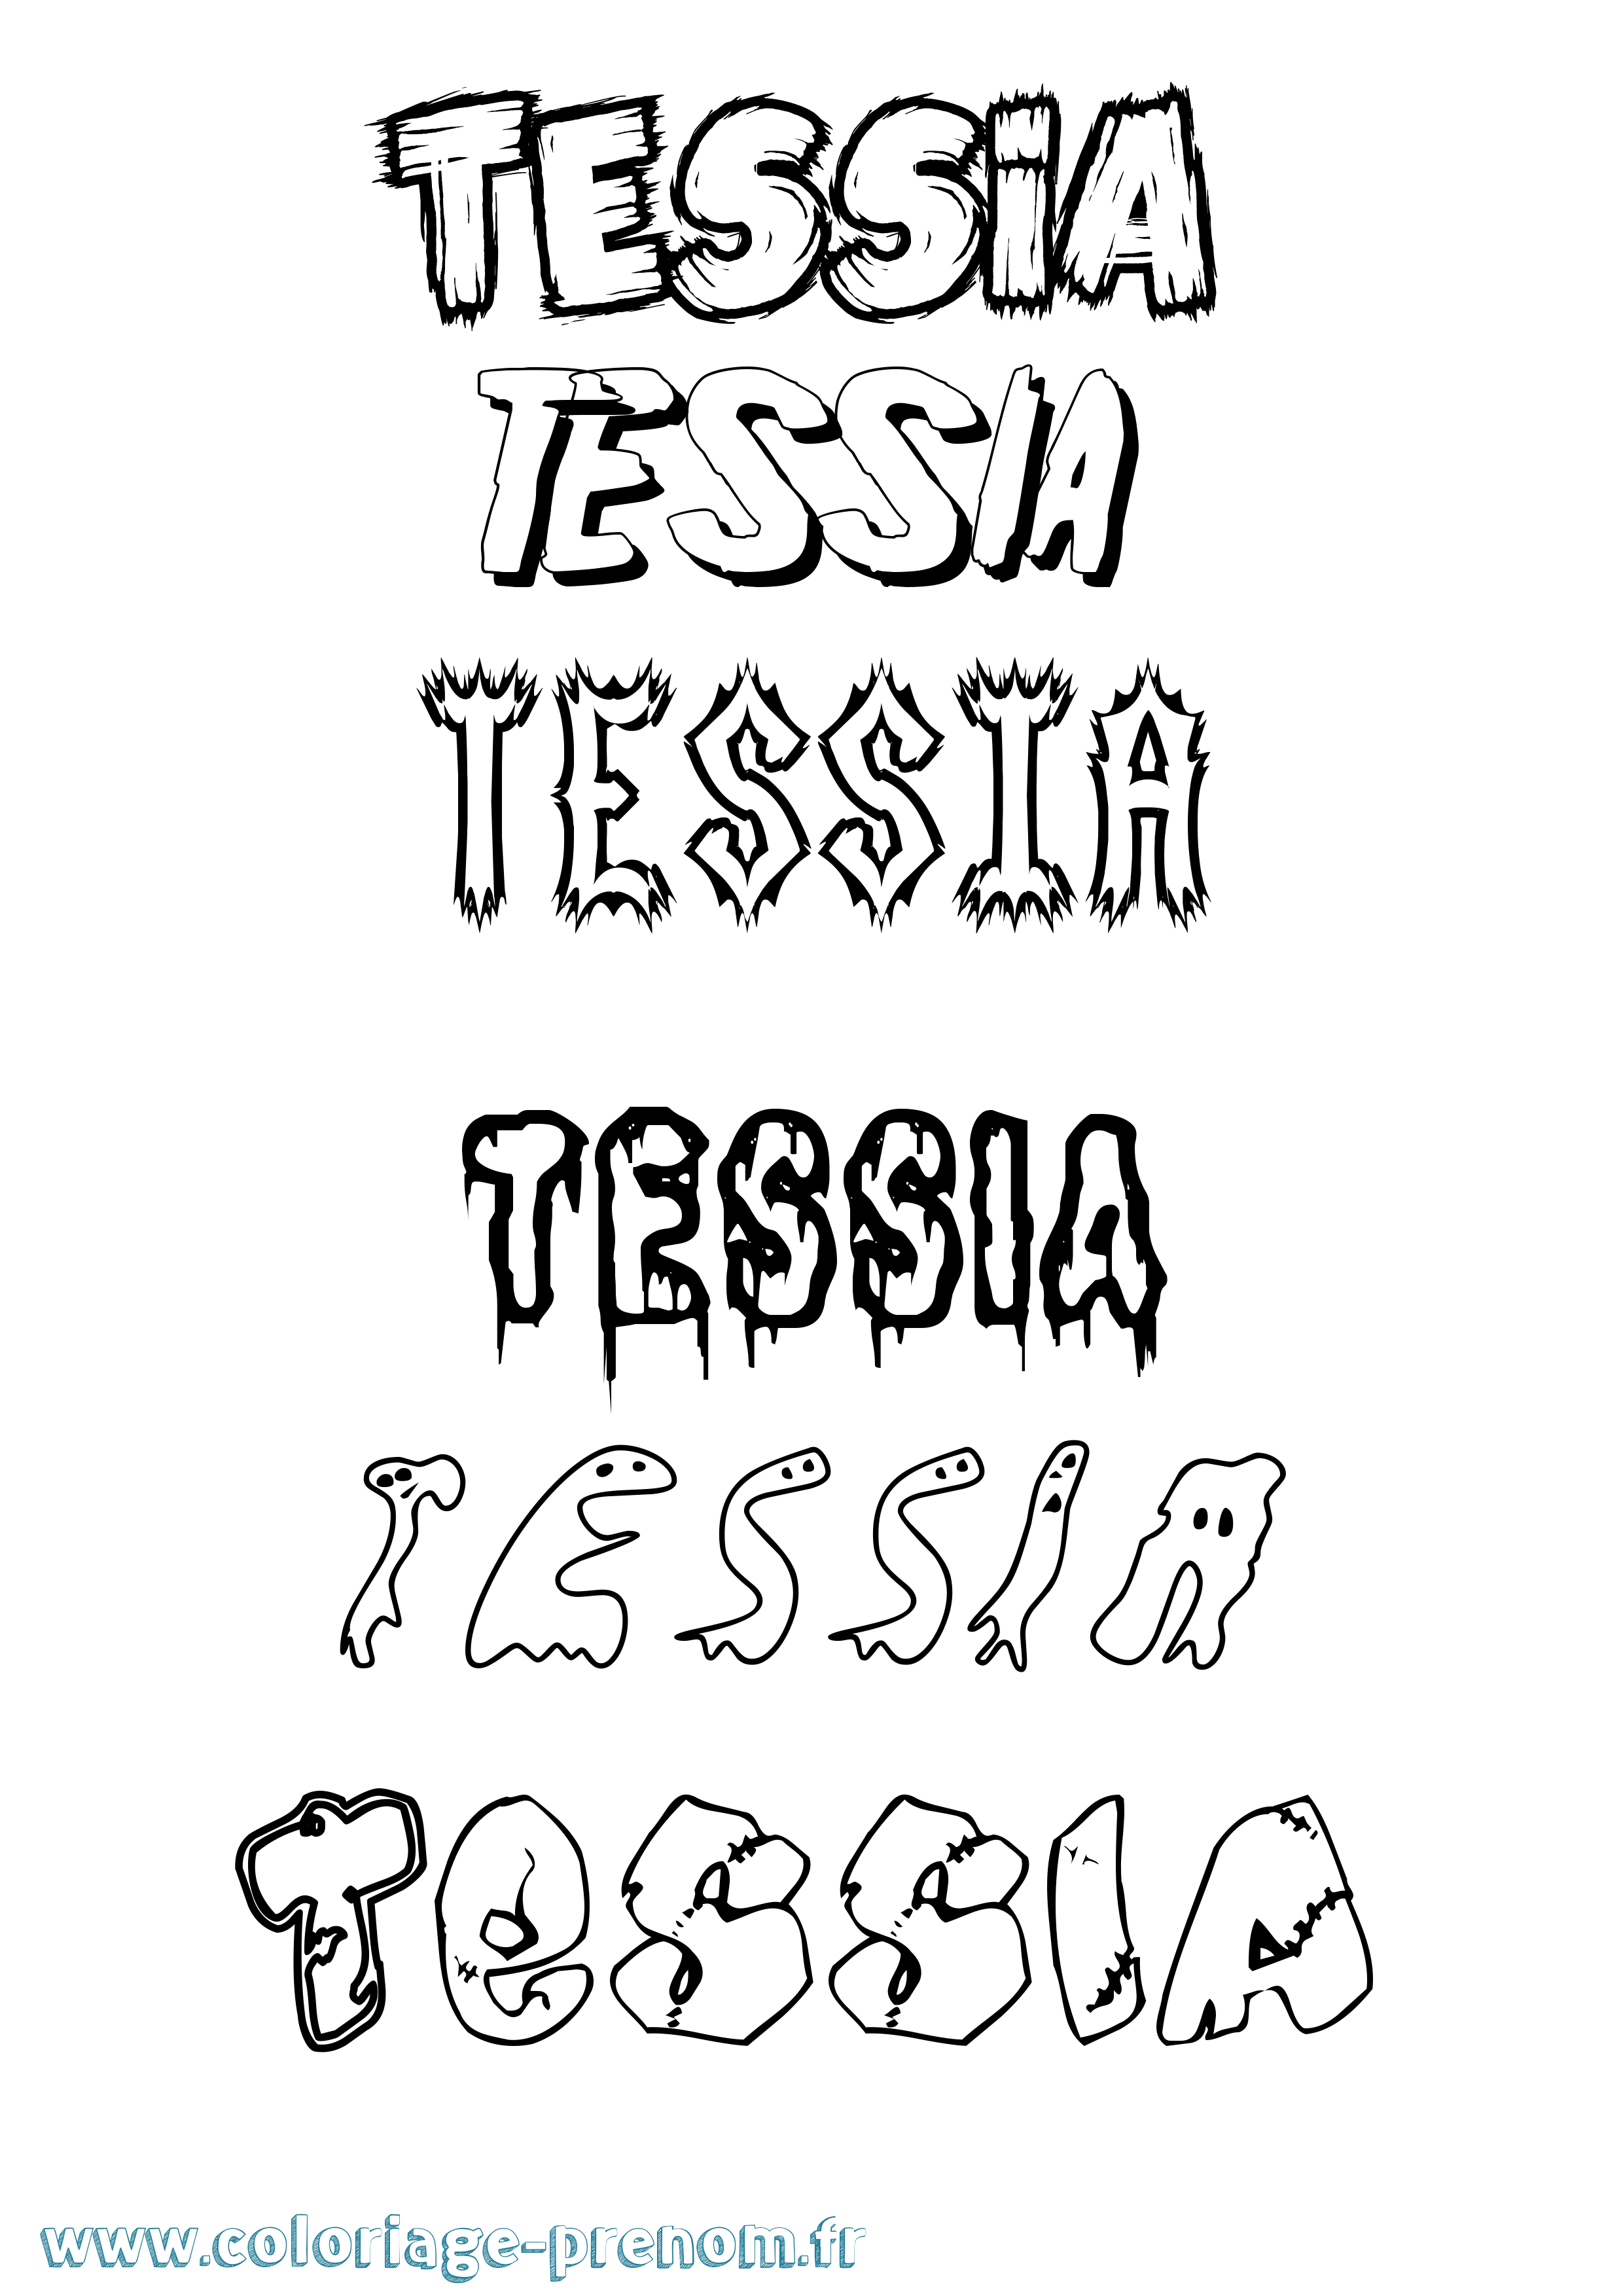 Coloriage prénom Tessia Frisson